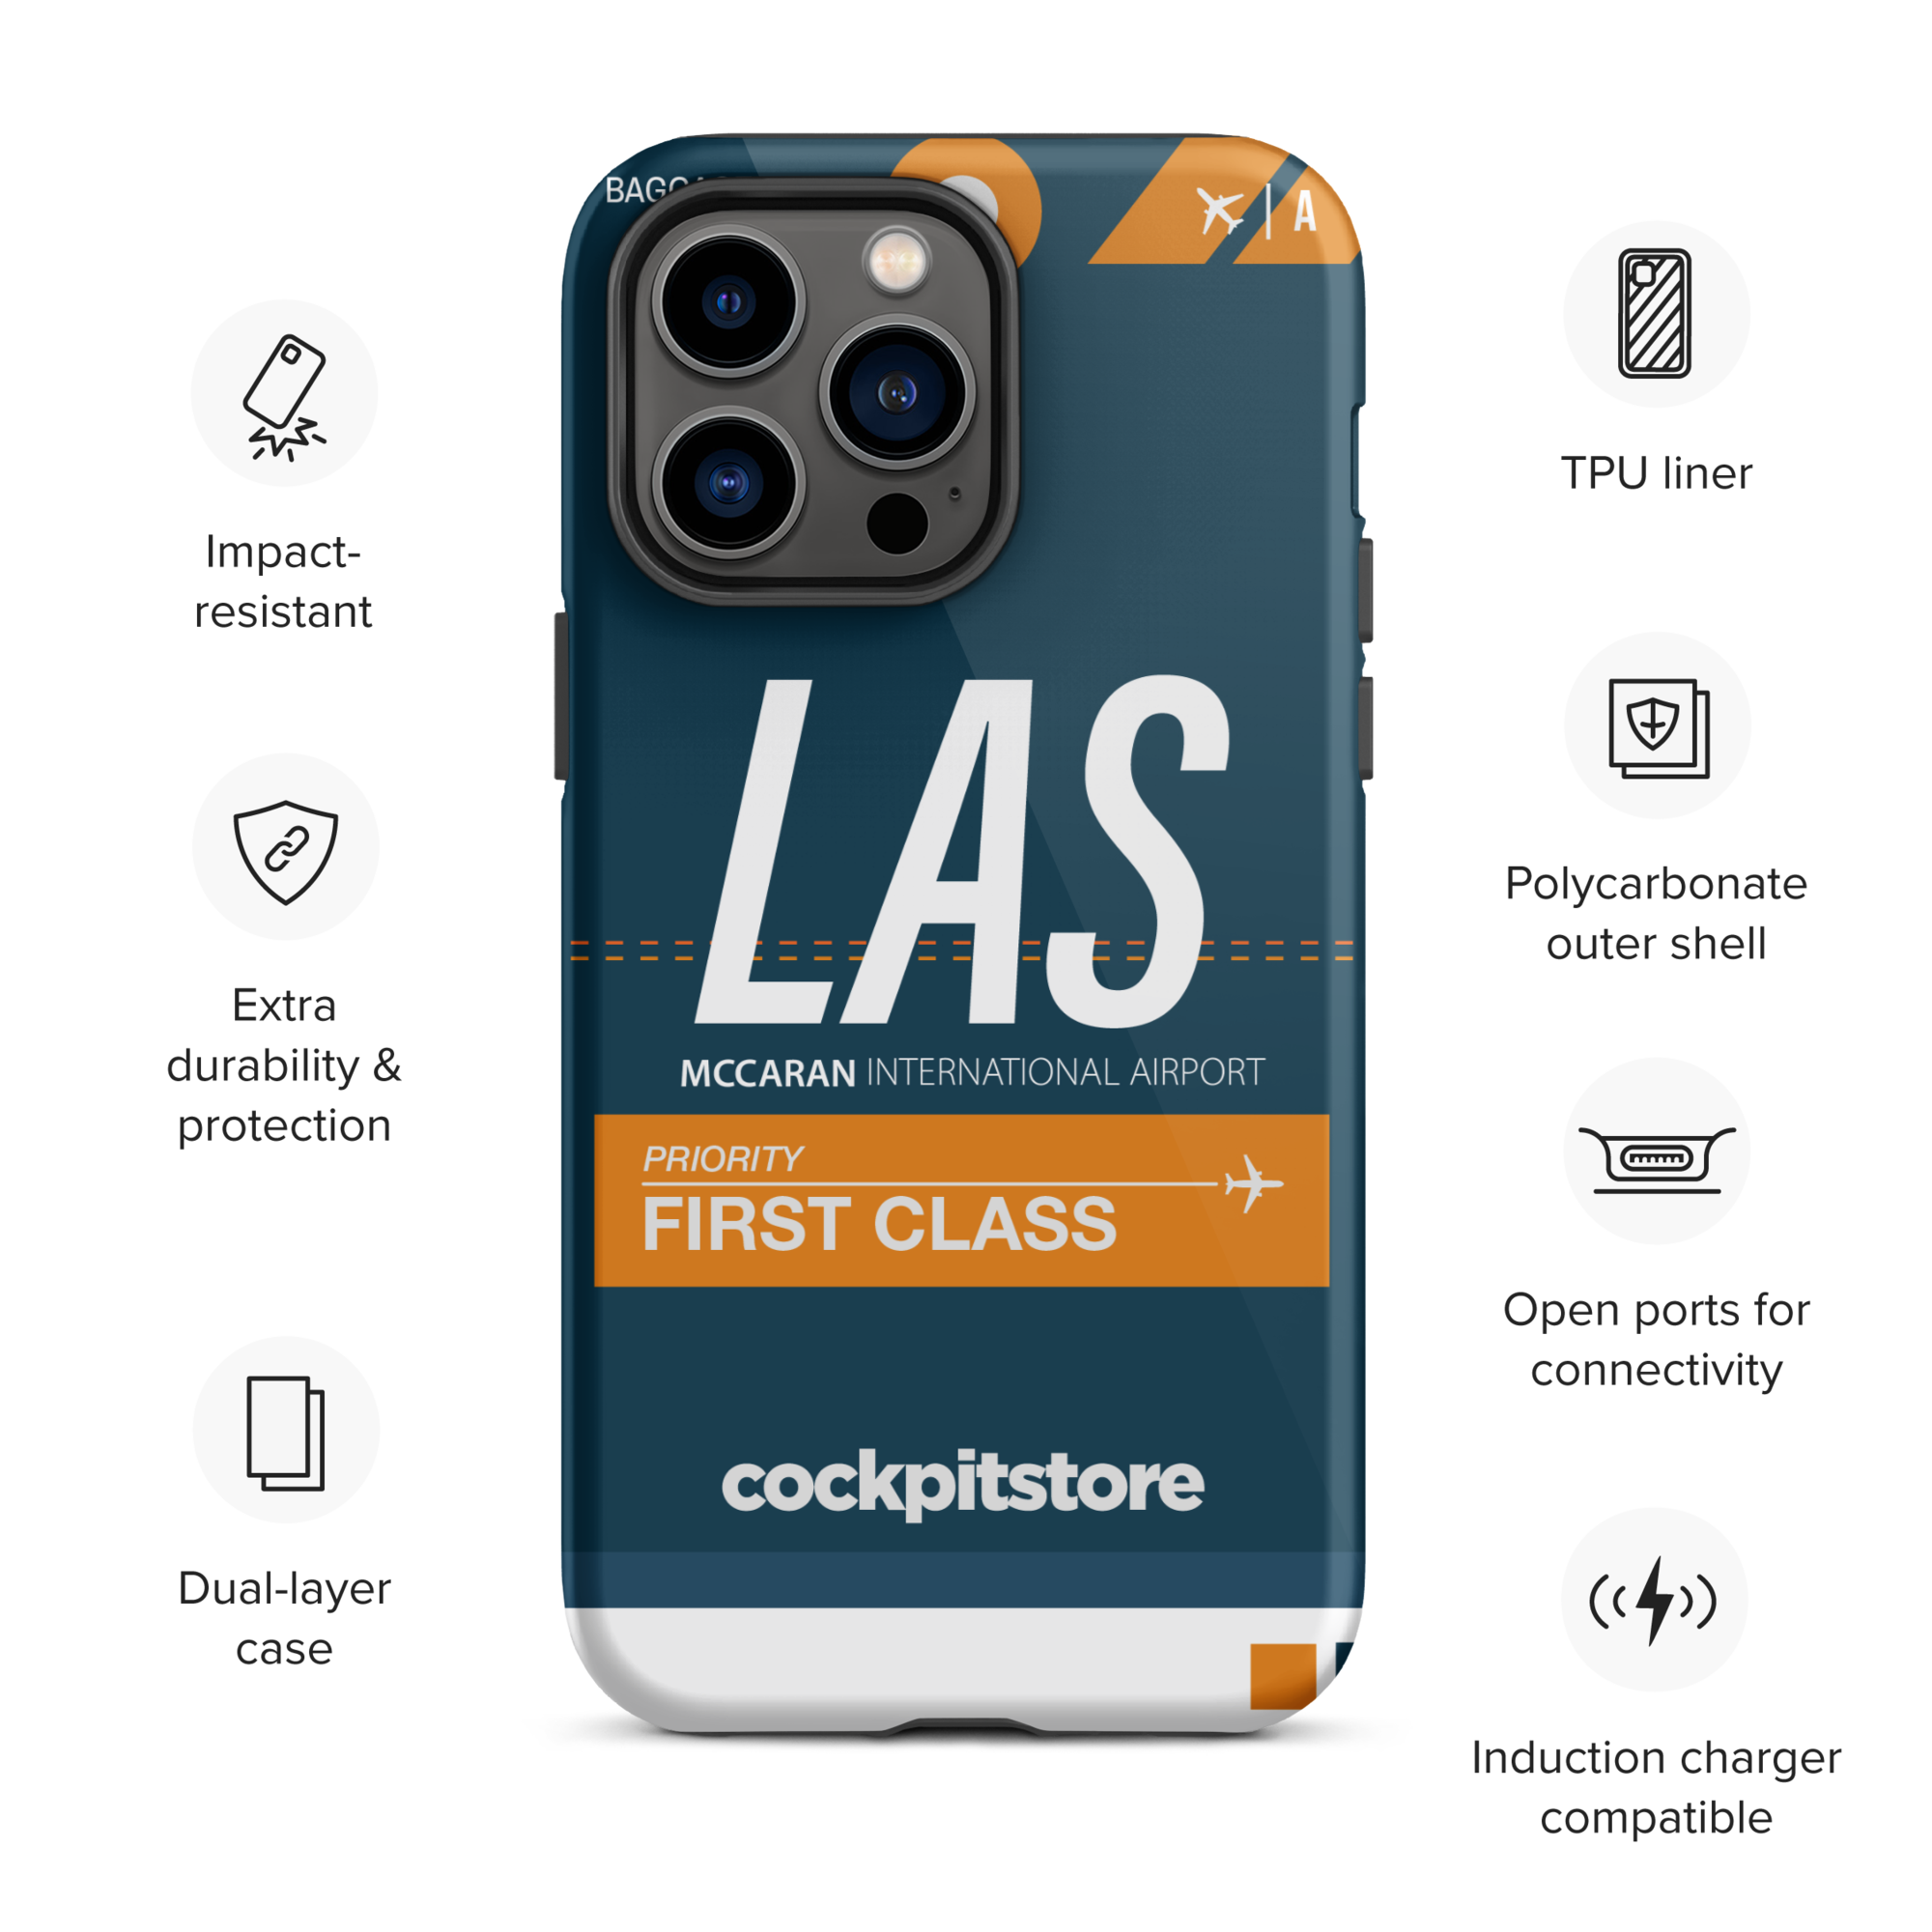 LAS - Las Vegas iPhone Tough Case mit Flughafencode